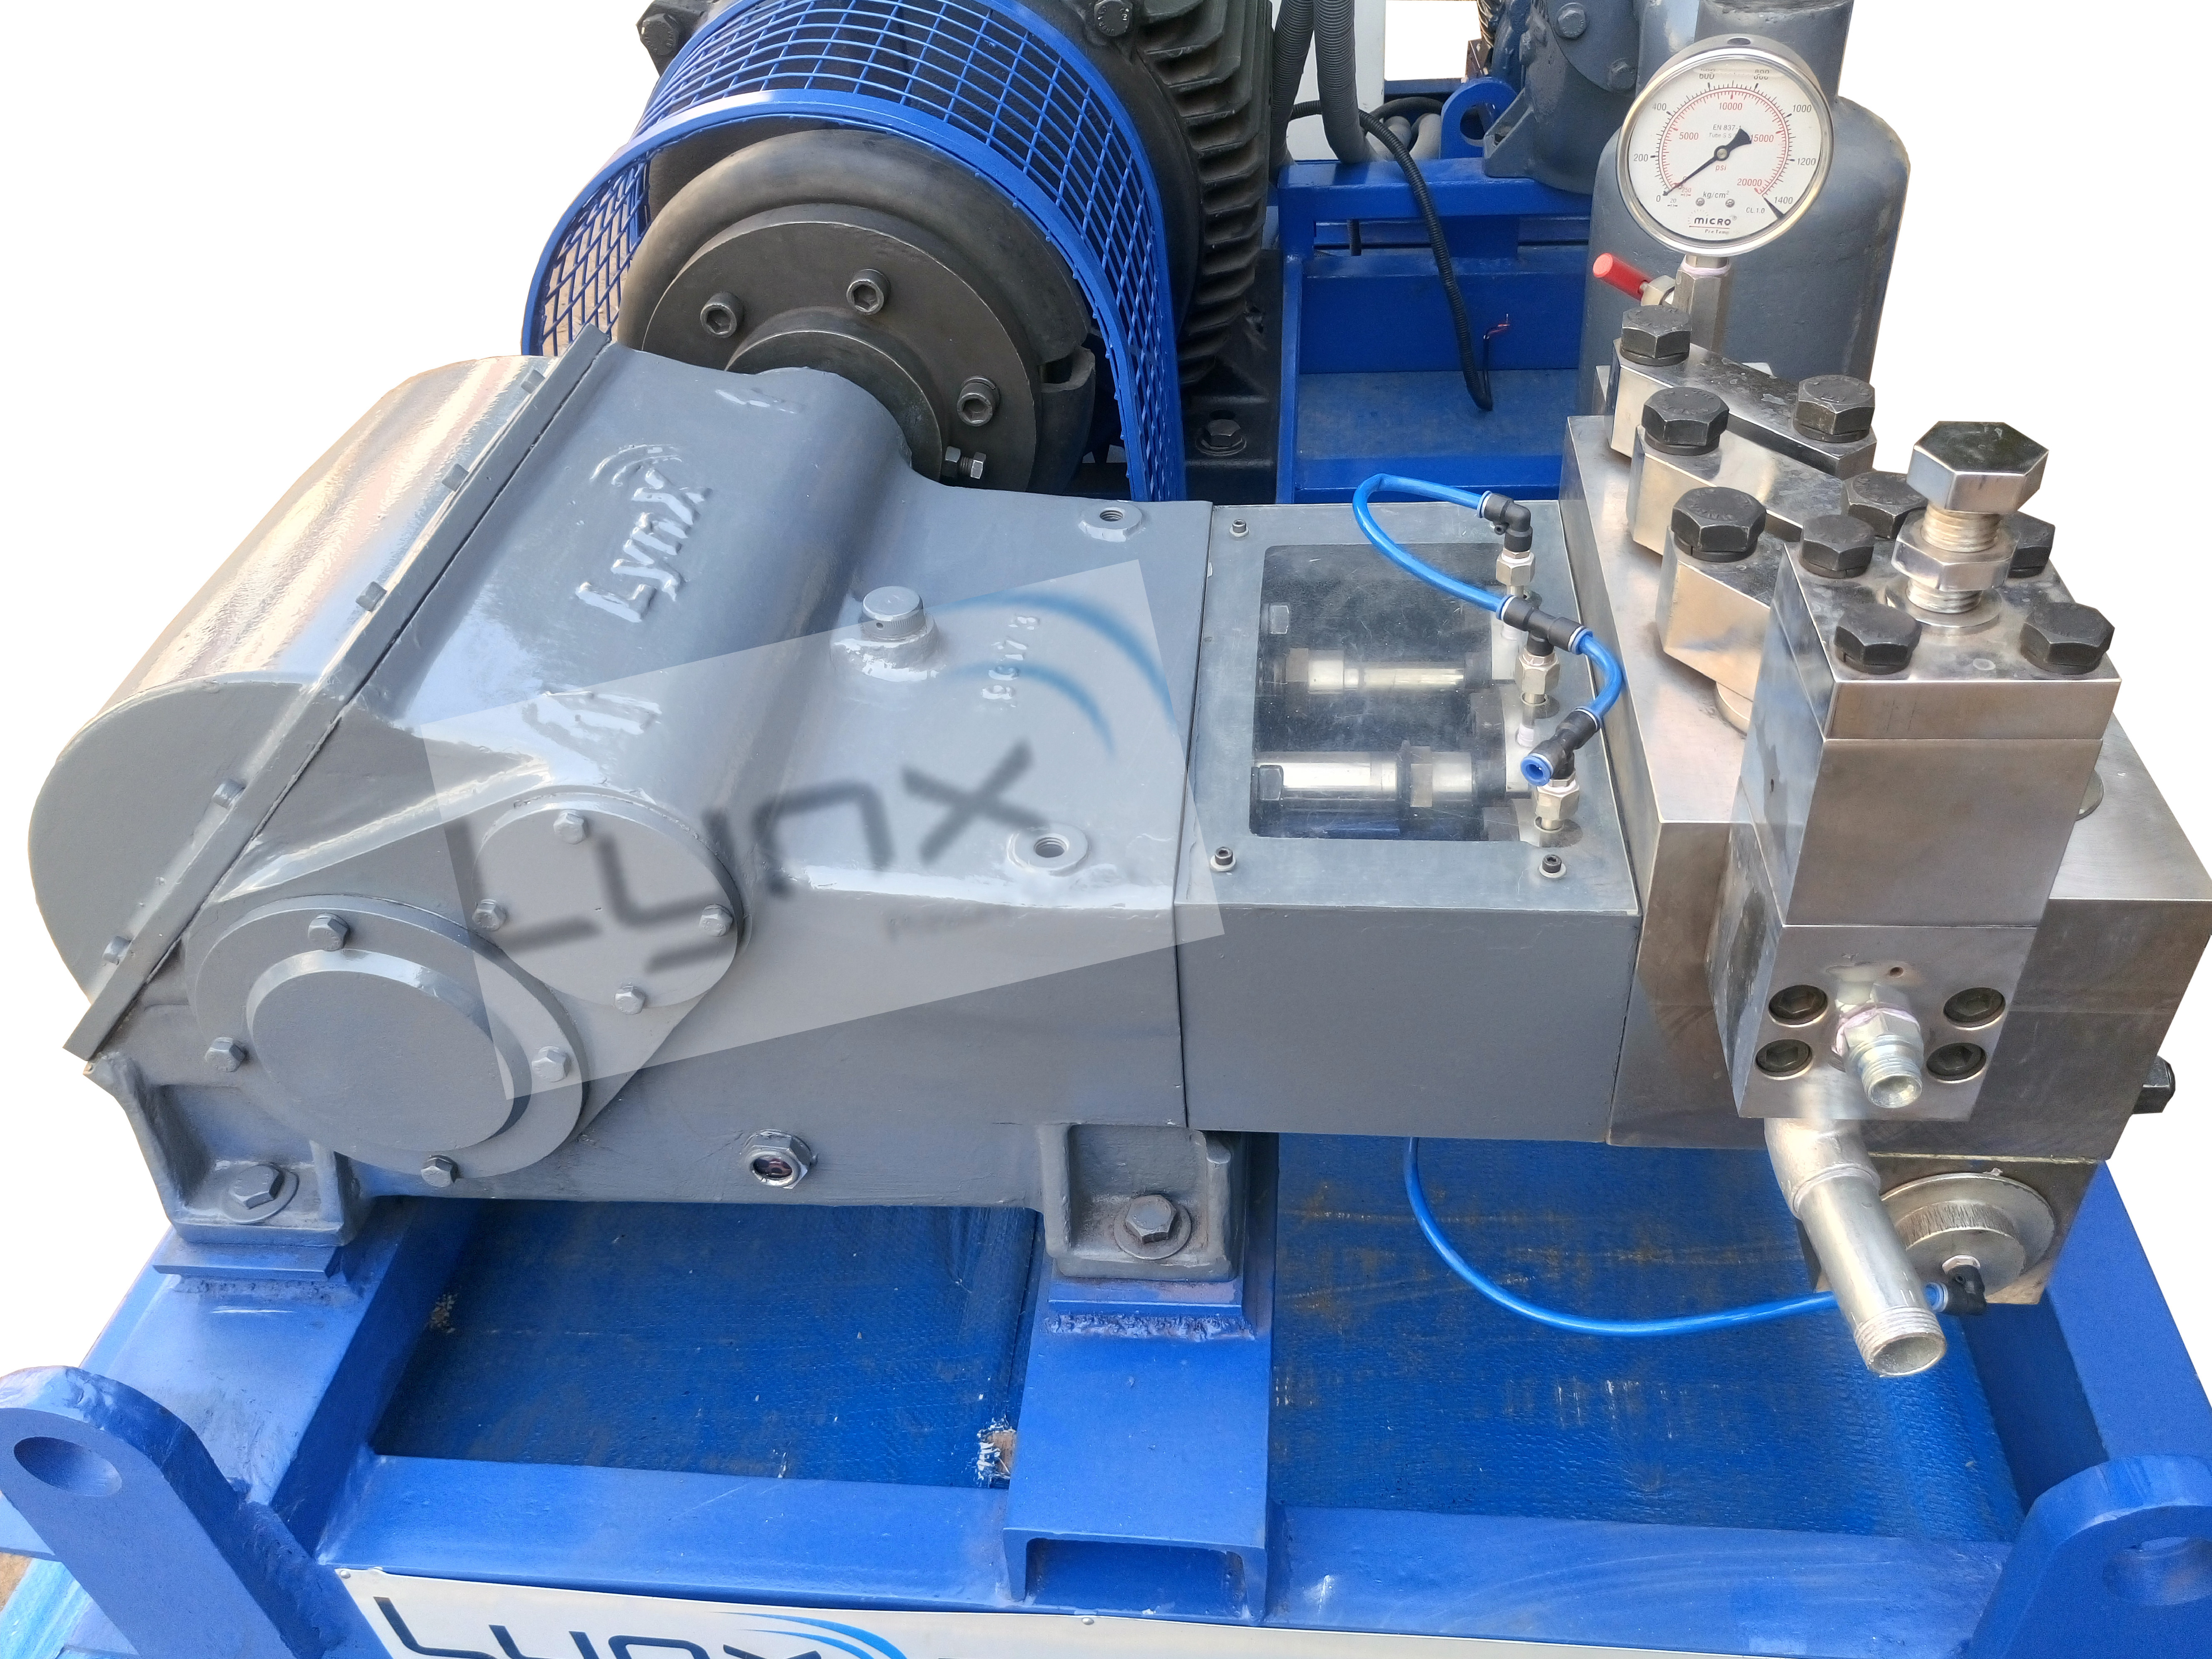 Hydro Pressure Testing Machine and Equipment